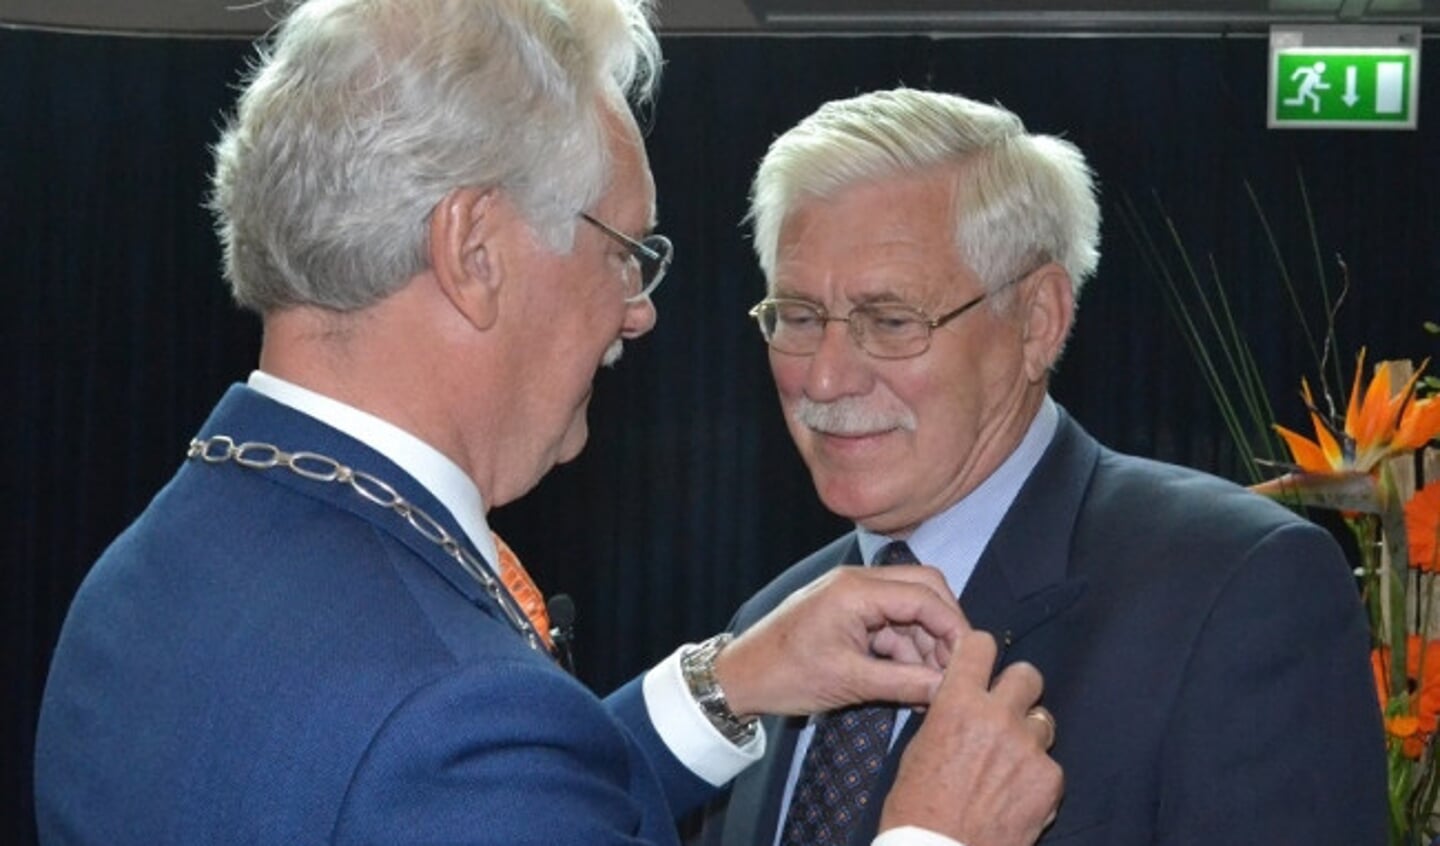  De heer Vreugdenhil (81) uit Epe werd benoemd tot Ridder in de Orde van Oranje-Nassau